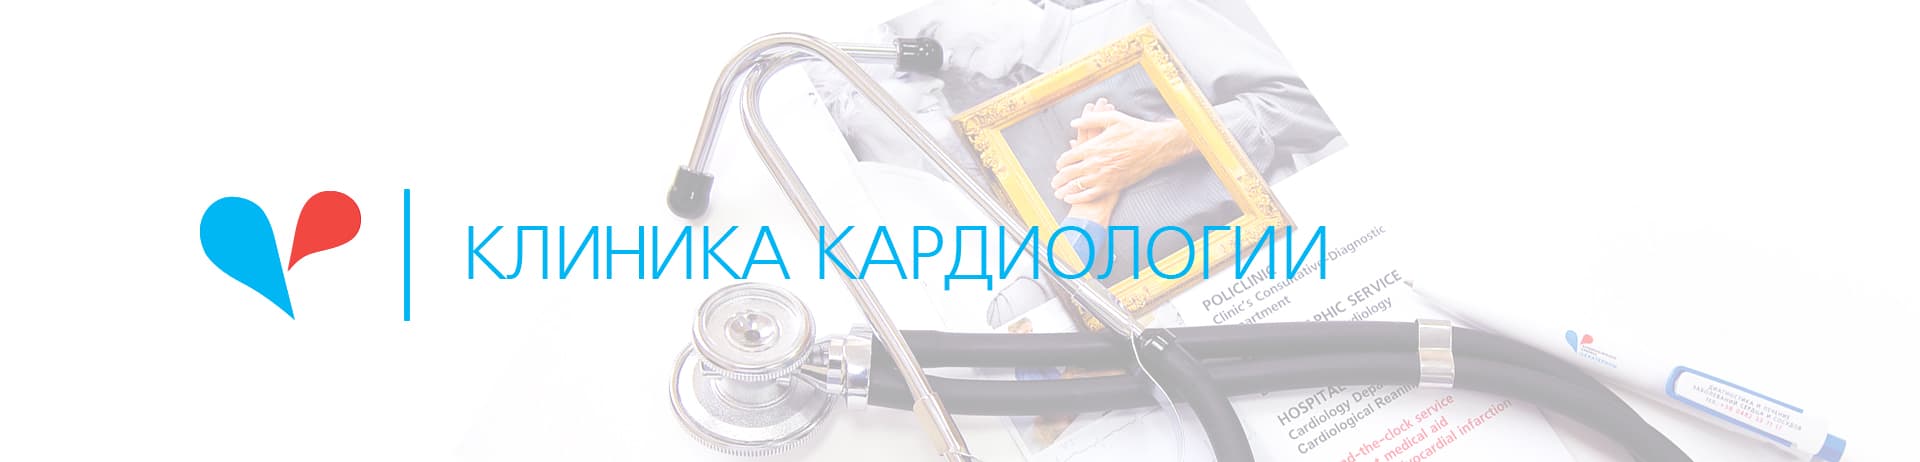 Консультація кардіолога - 3 - svekaterina.ua